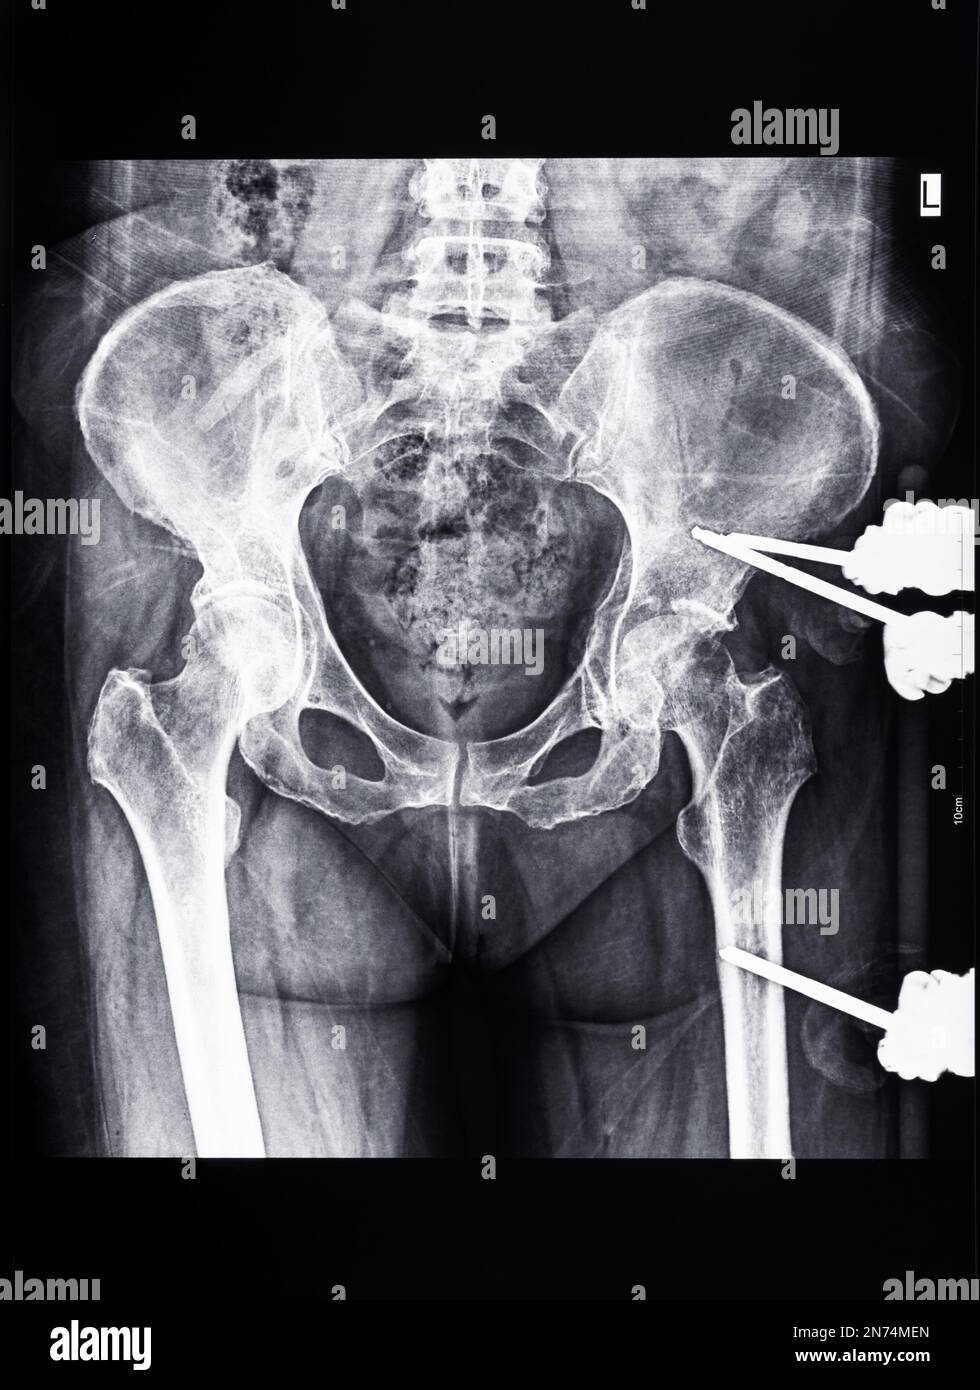 Röntgenaufnahmen des Beckens mit Fixateur externe am Femur- und Beckenknochen Stockfoto